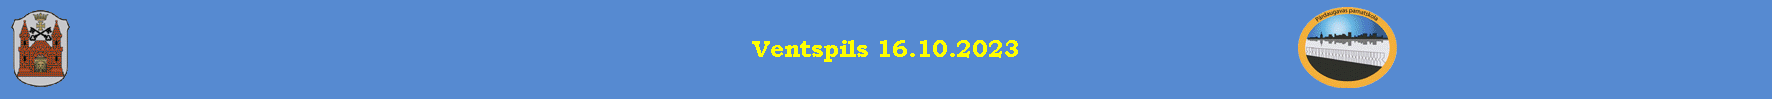 Ventspils 16.10.2023